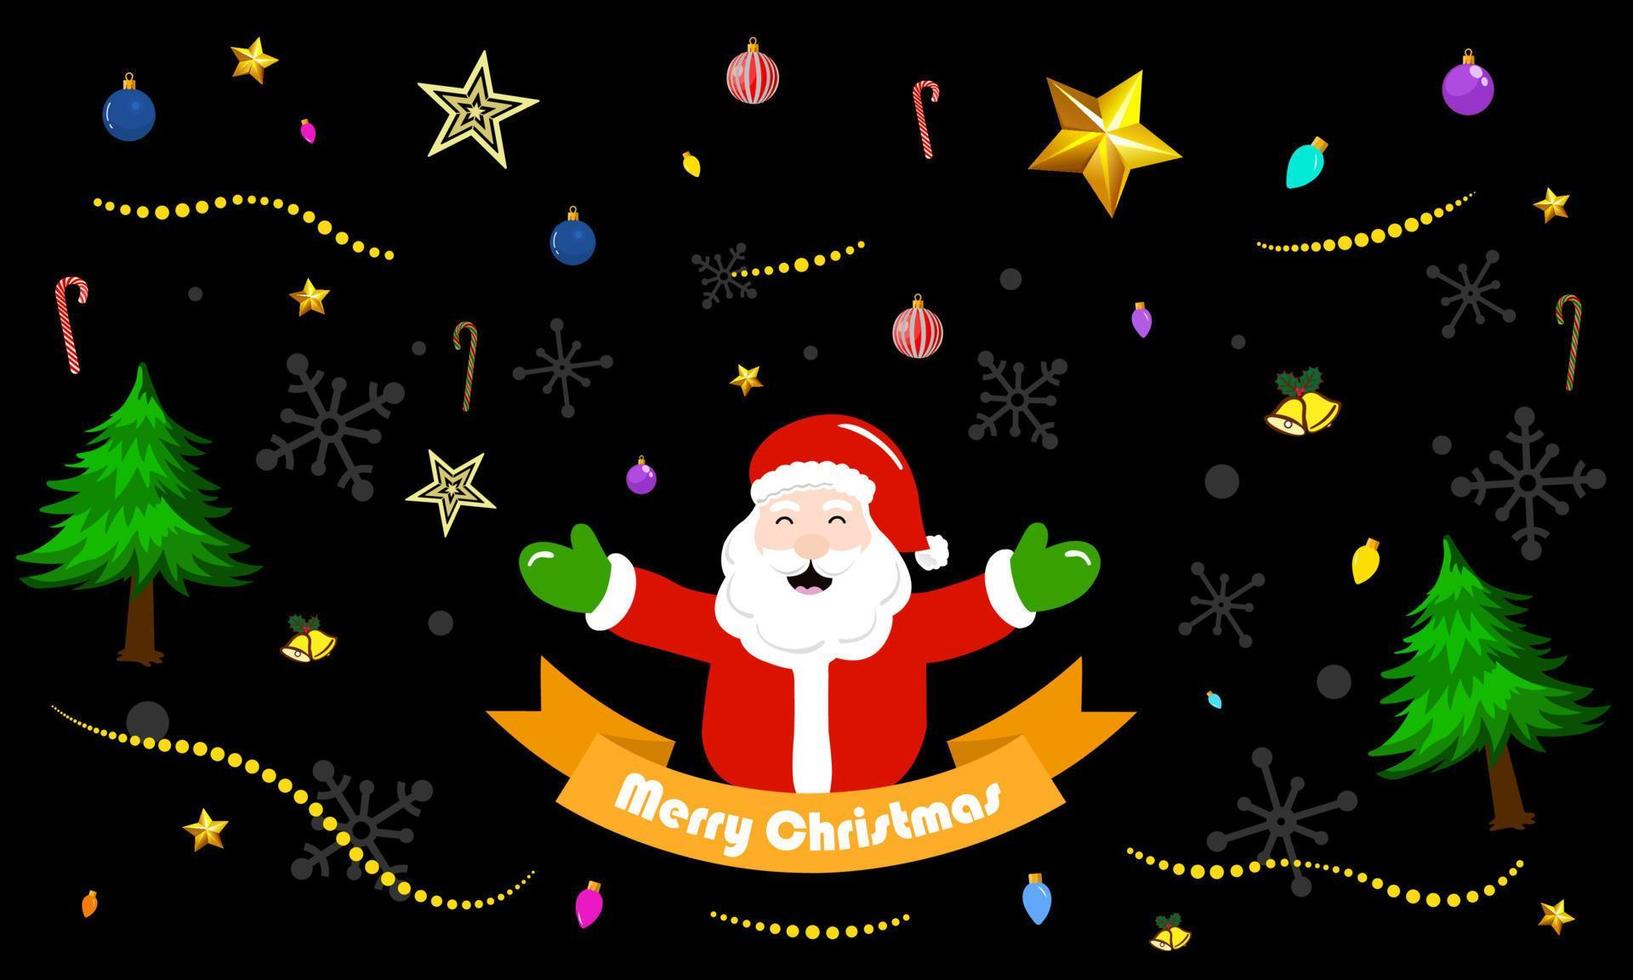 patrón de navidad santa claus buen humor extiende los brazos de bienvenida sobre la cinta con un mensaje de feliz navidad elementos festivos como árbol de navidad, copo de nieve, luz de navidad, bastón de caramelo, estrellas, adornos. vector